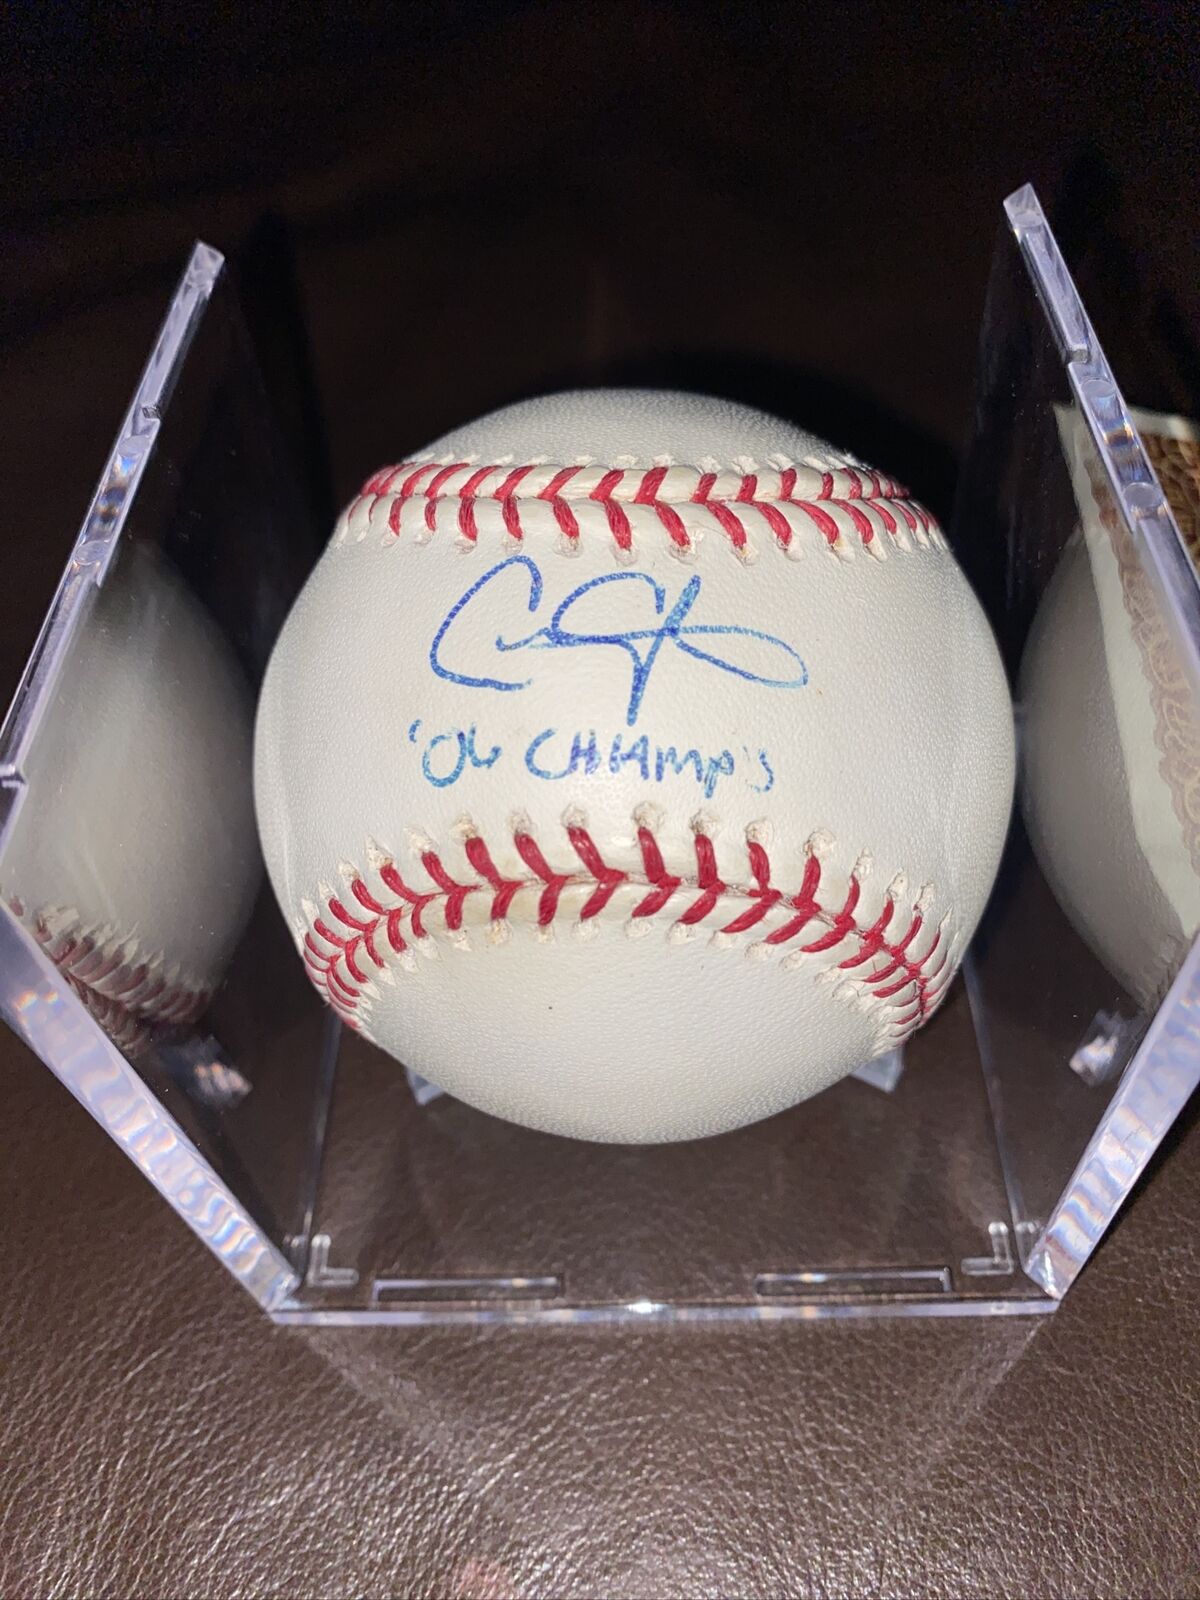 Chris Carpenter signed baseball w/ “06 Champs”